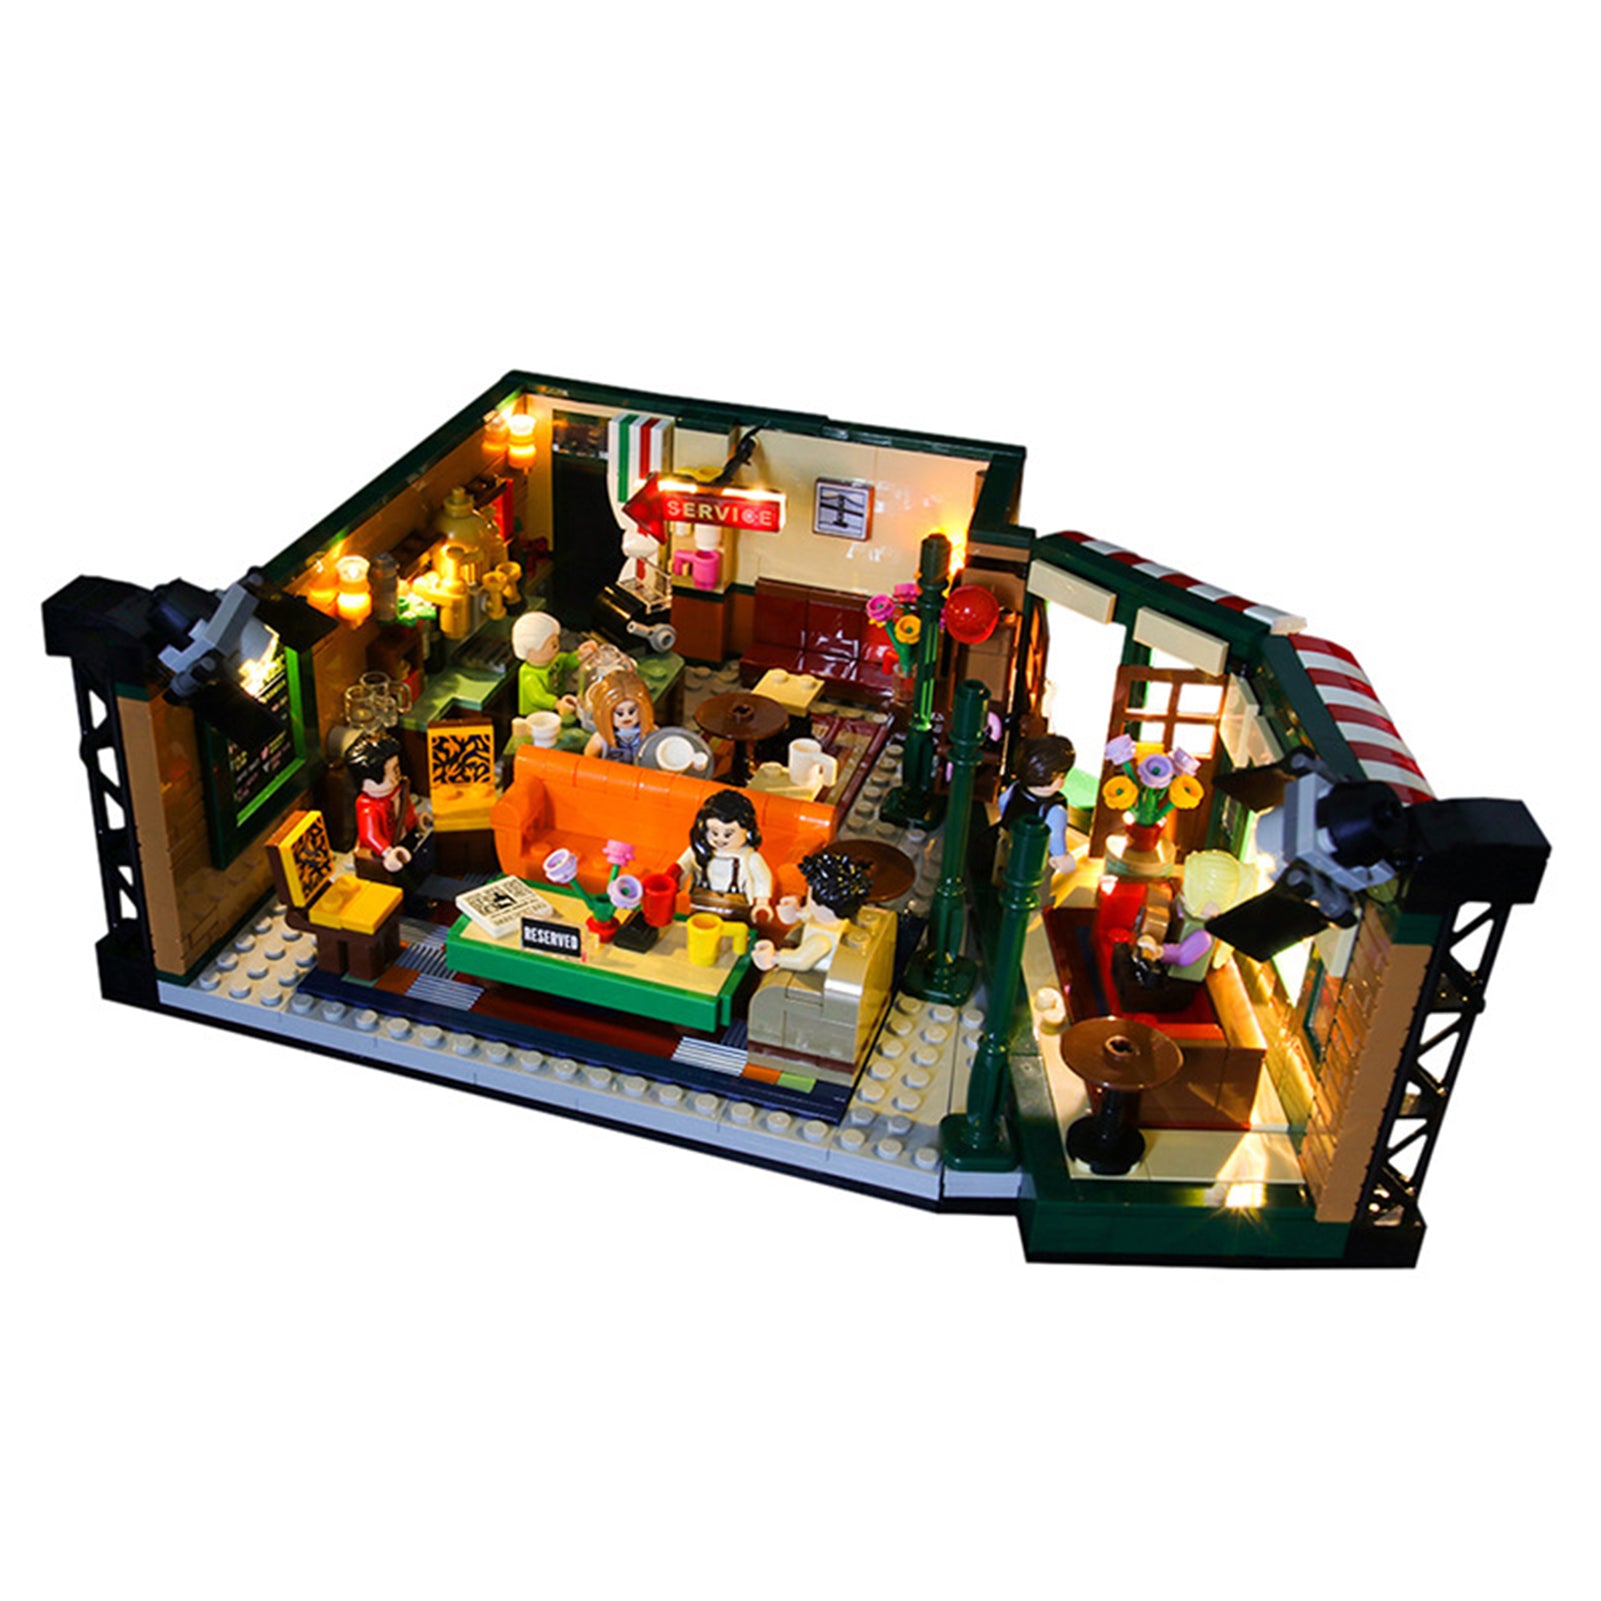 Light kit for Lego Ideas 21319 Central Perk